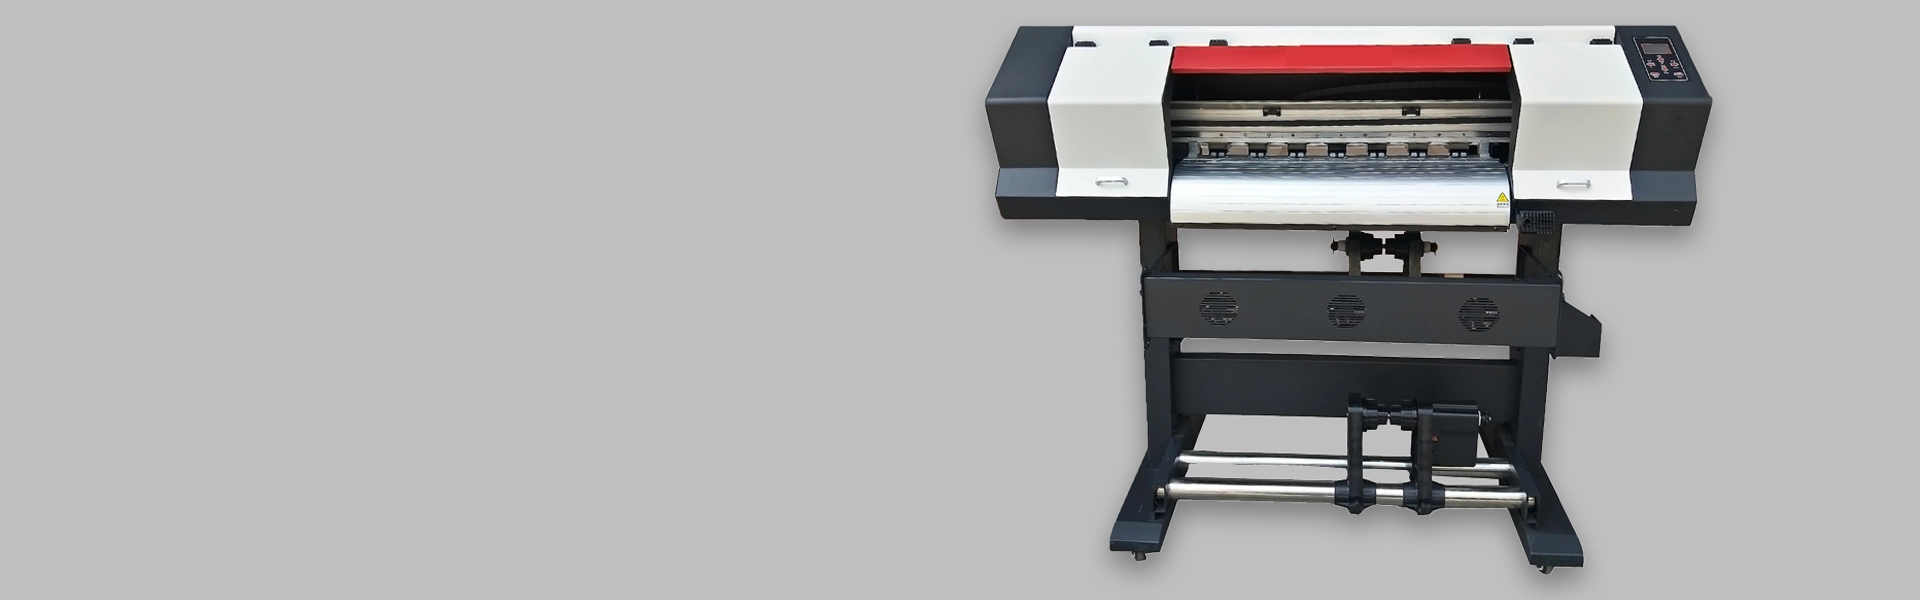 70cm Sublimation Printer